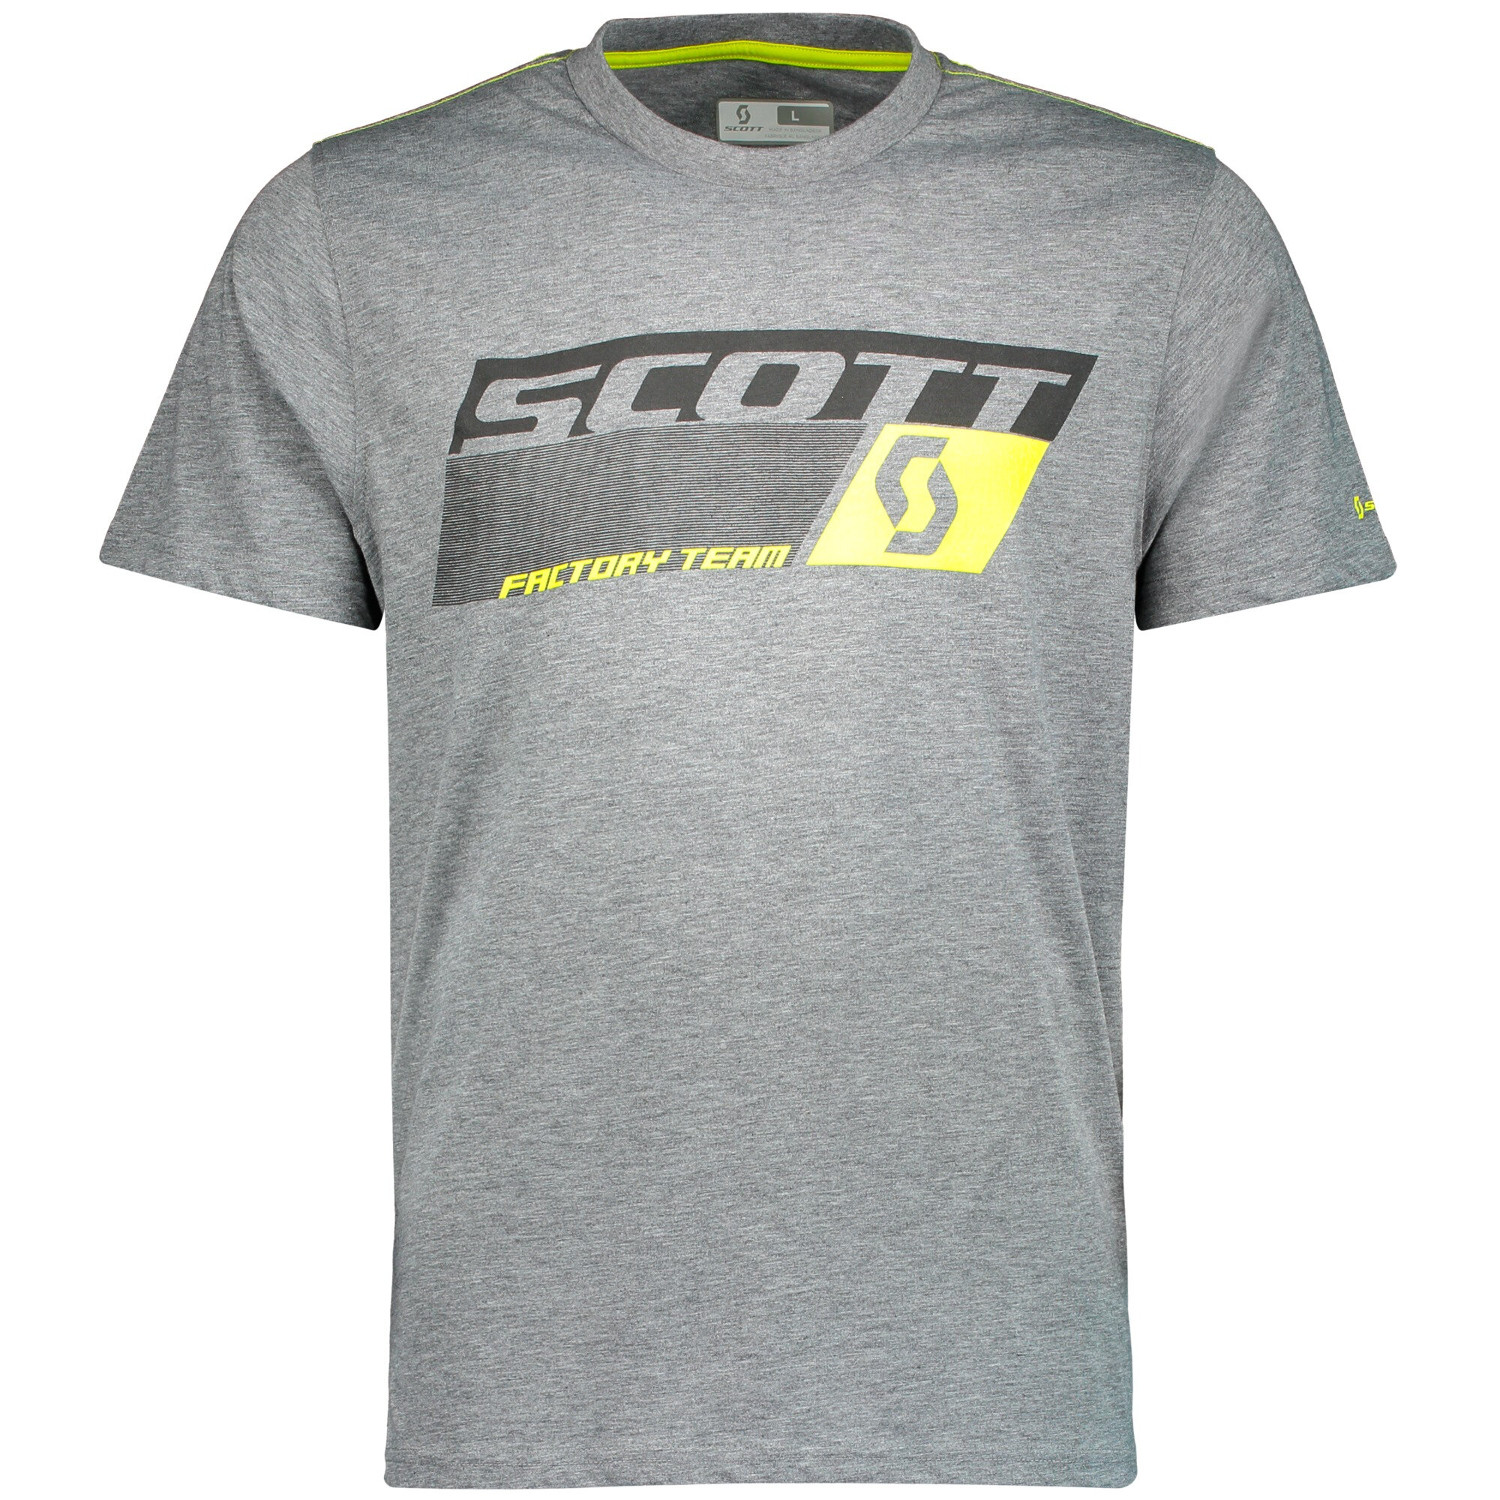 Scott T-Shirt Factory Team Dri Dunkelgrau meliert/Sulphur Gelb